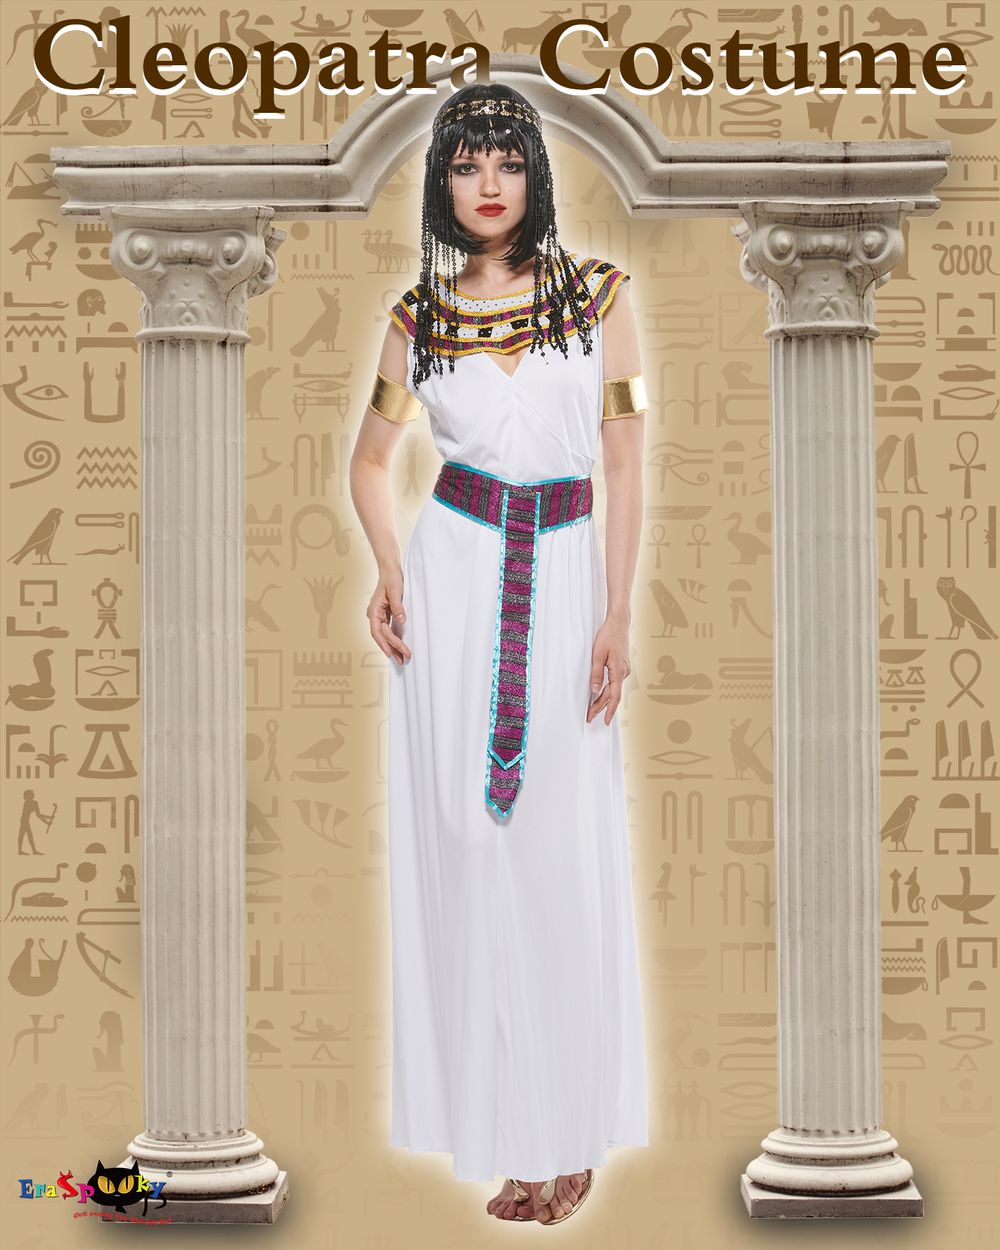 Eraspooky Cleopatra Frauenkostüm Ägyptische Prinzessin Kostüm